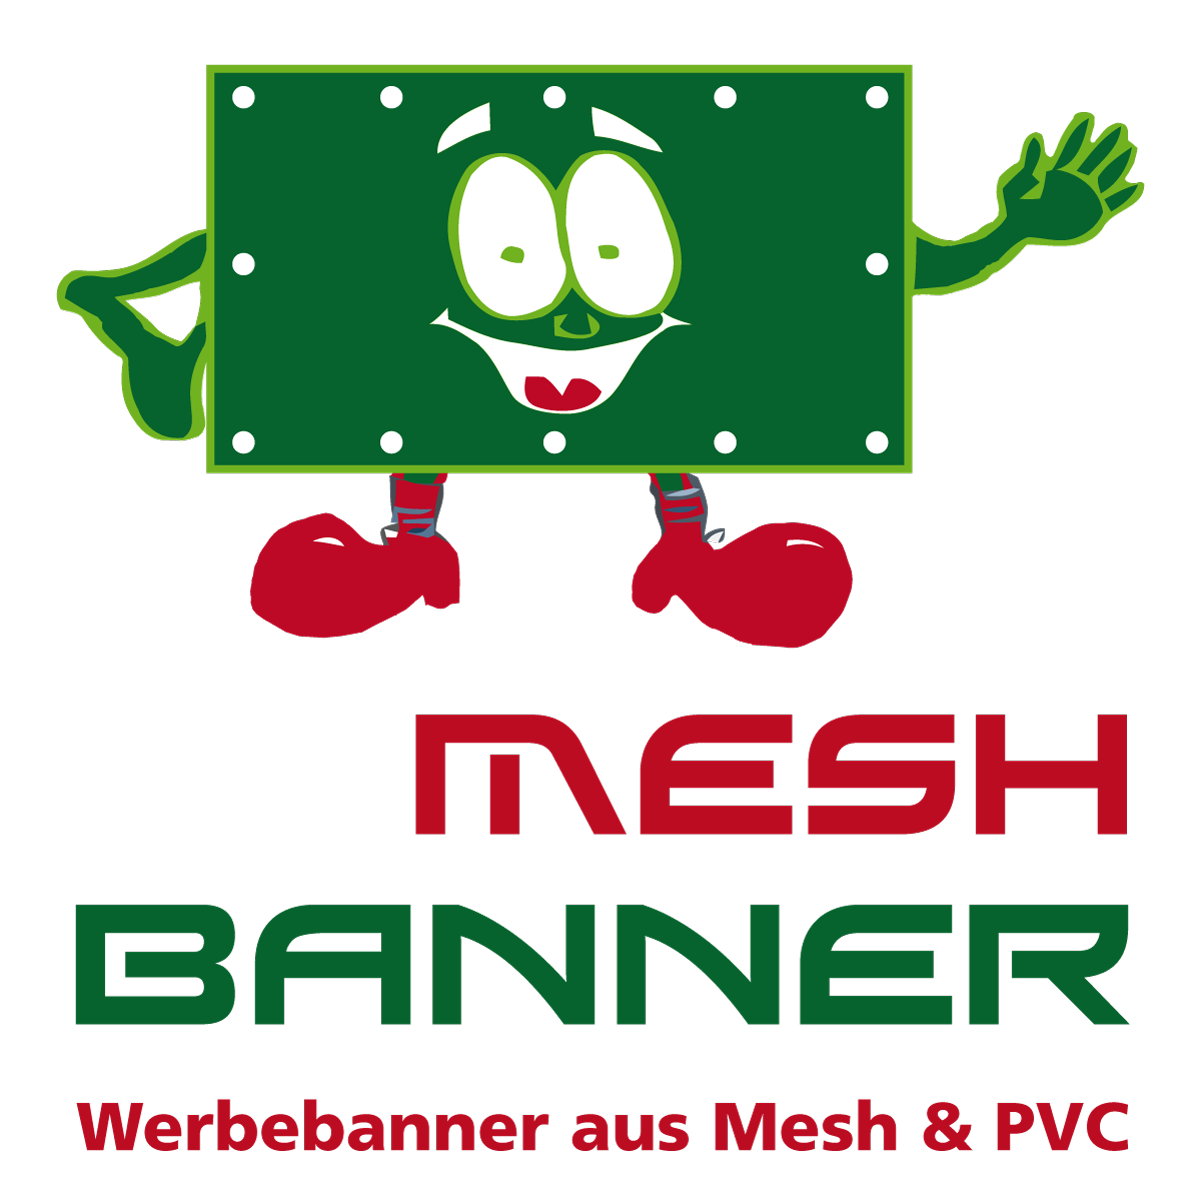 Meshbanner 250cm x 60cm inkl höchste Qualität! Druck und Entwurf 